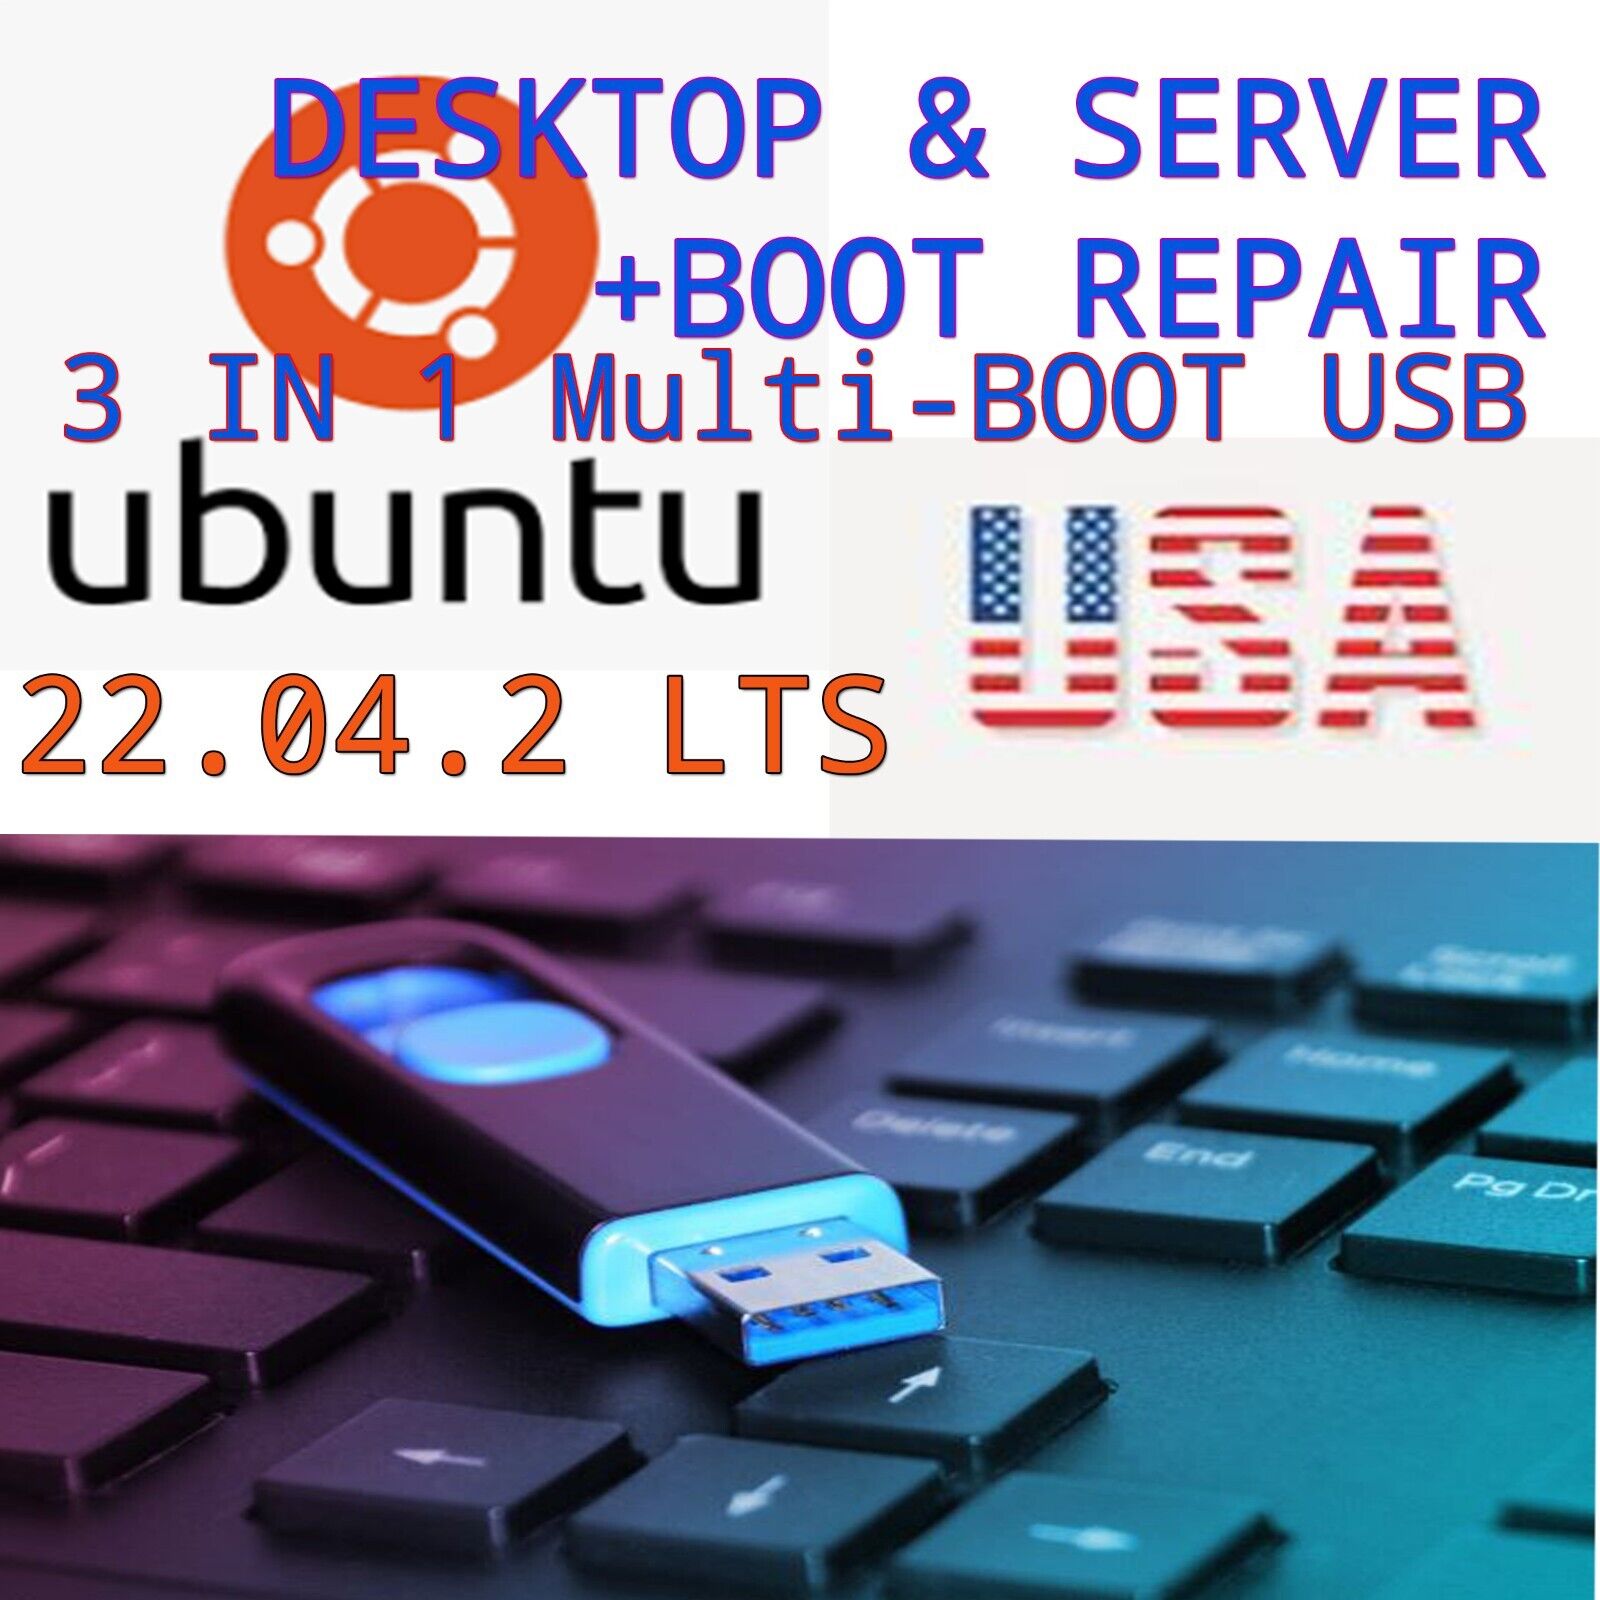 Ubuntu 22.04.2 LTS USB 3 in 1 UEFI BIOS Desktop Server and Boot Repair FAST SHIP